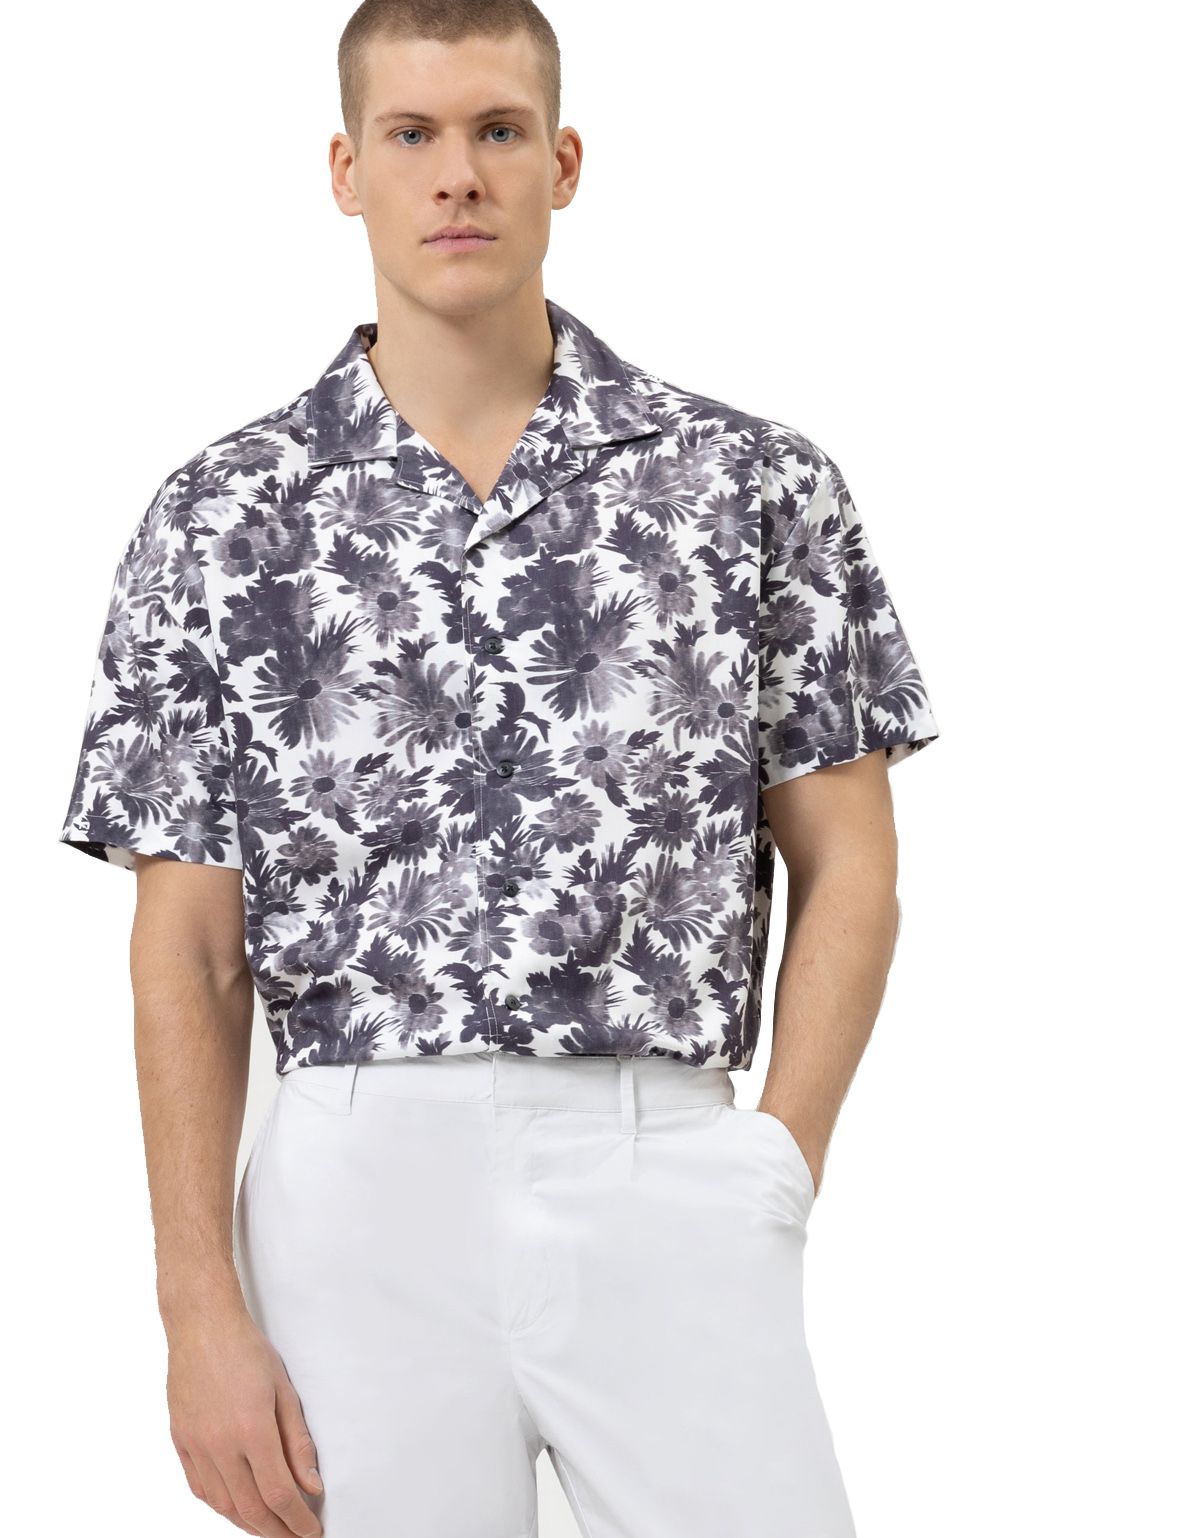 Рубашка мужская с цветочным принтом OLYMP №6 six, оверсайз